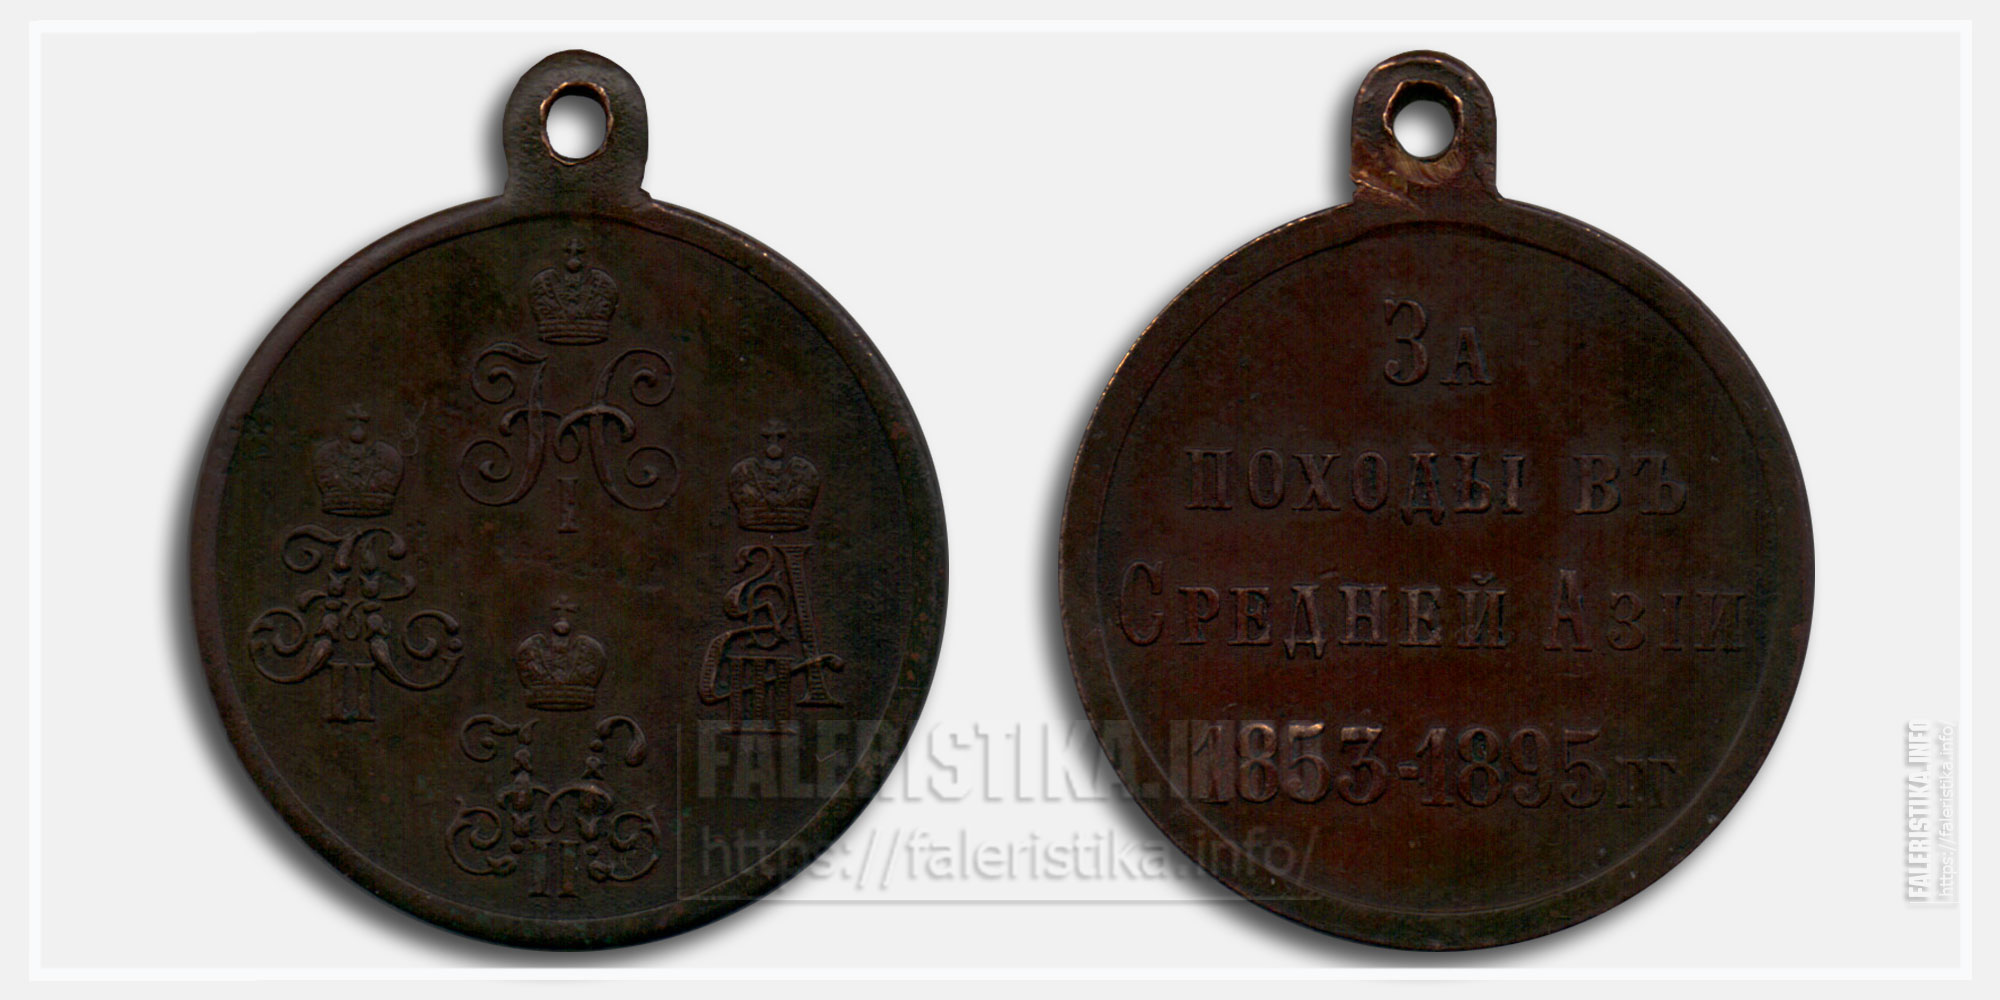 Медаль "За походы в Средней Азии 1853-1895"